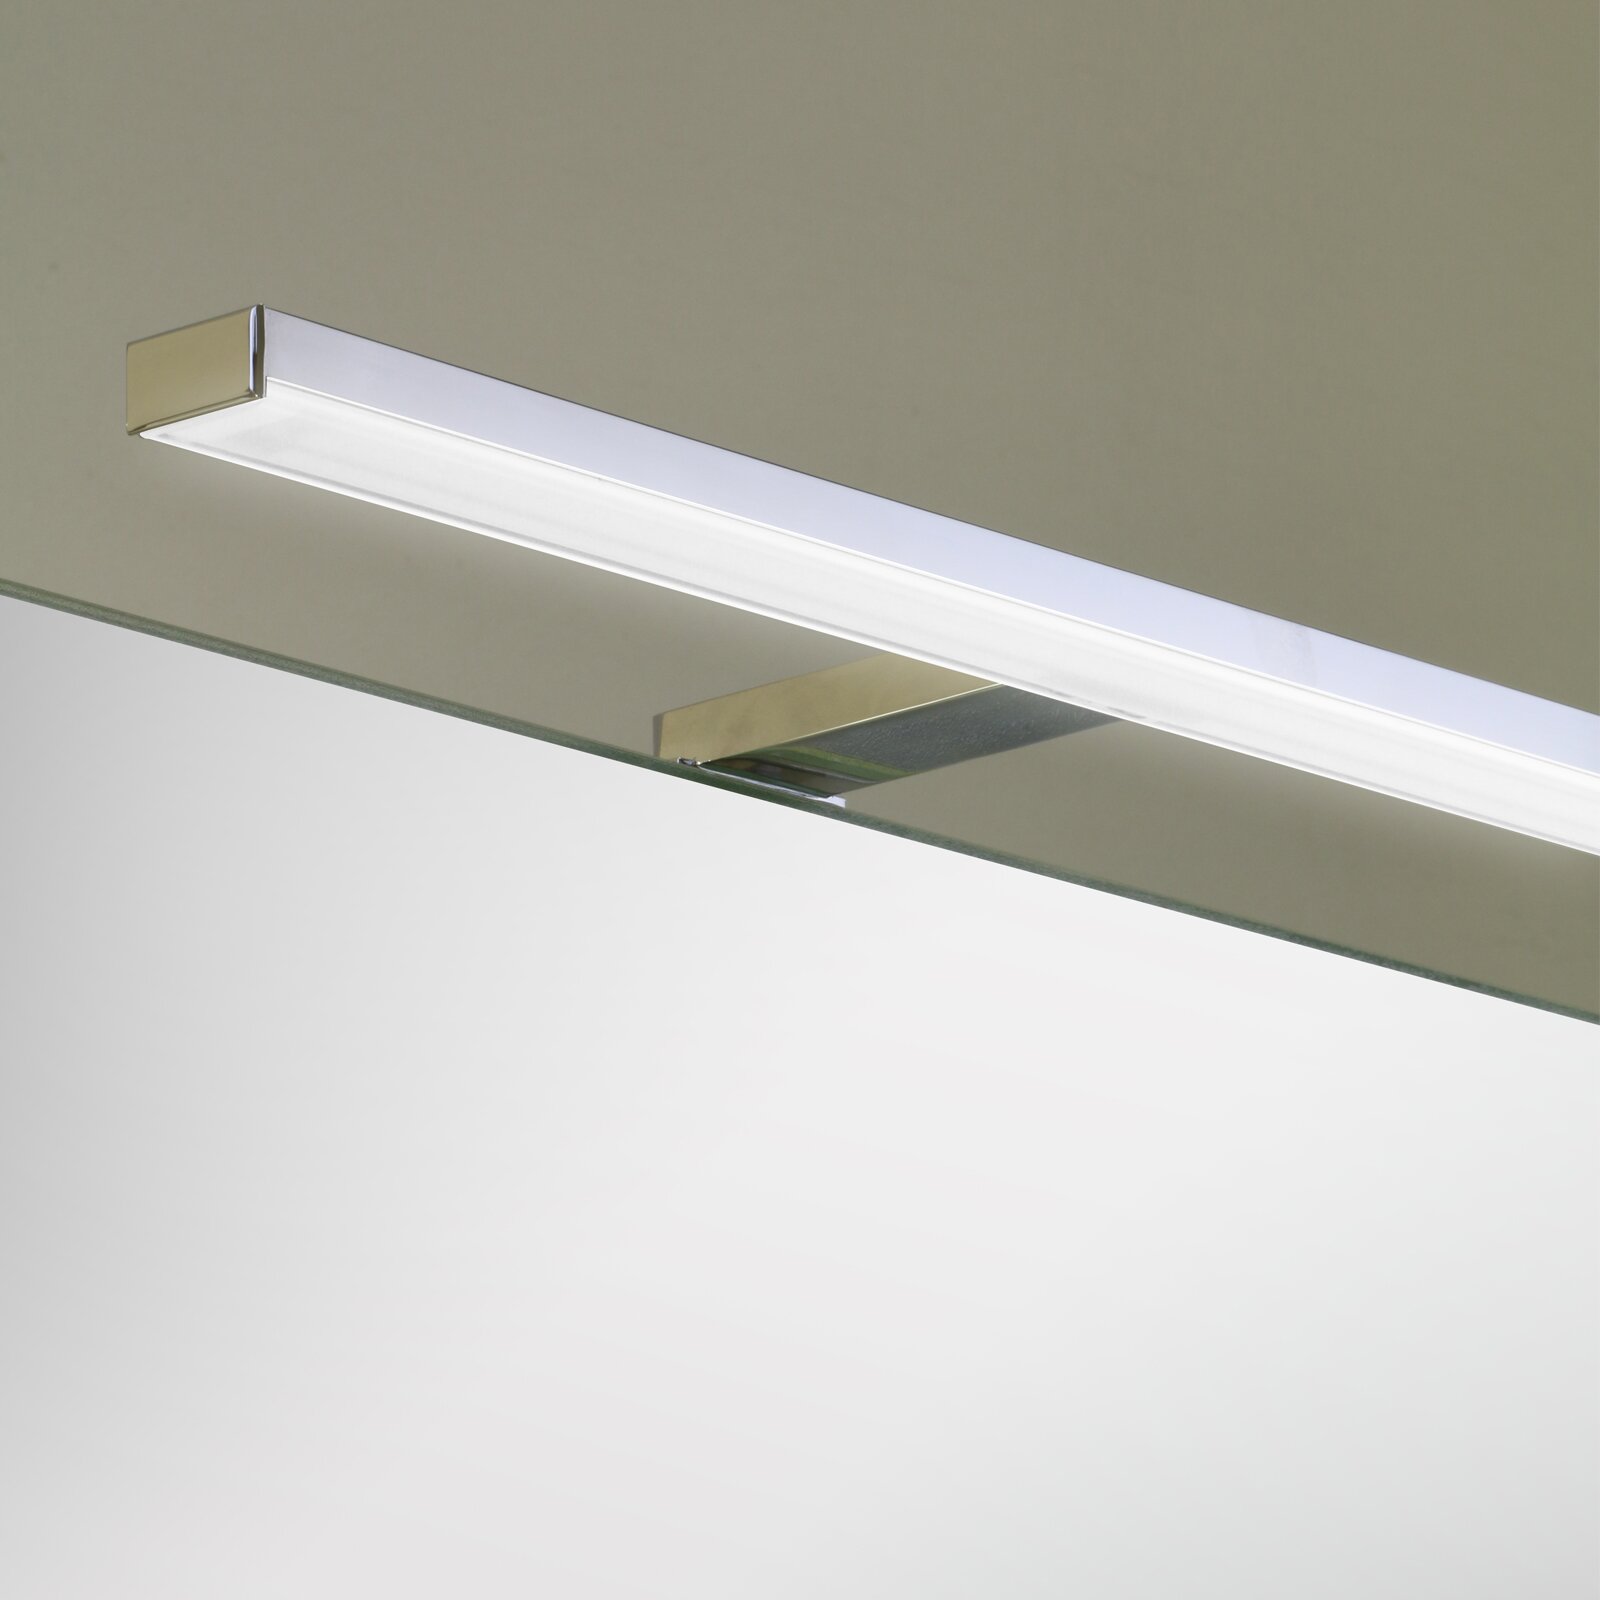 LED Spiegelleuchte Esta-100 | Schreiber Design®